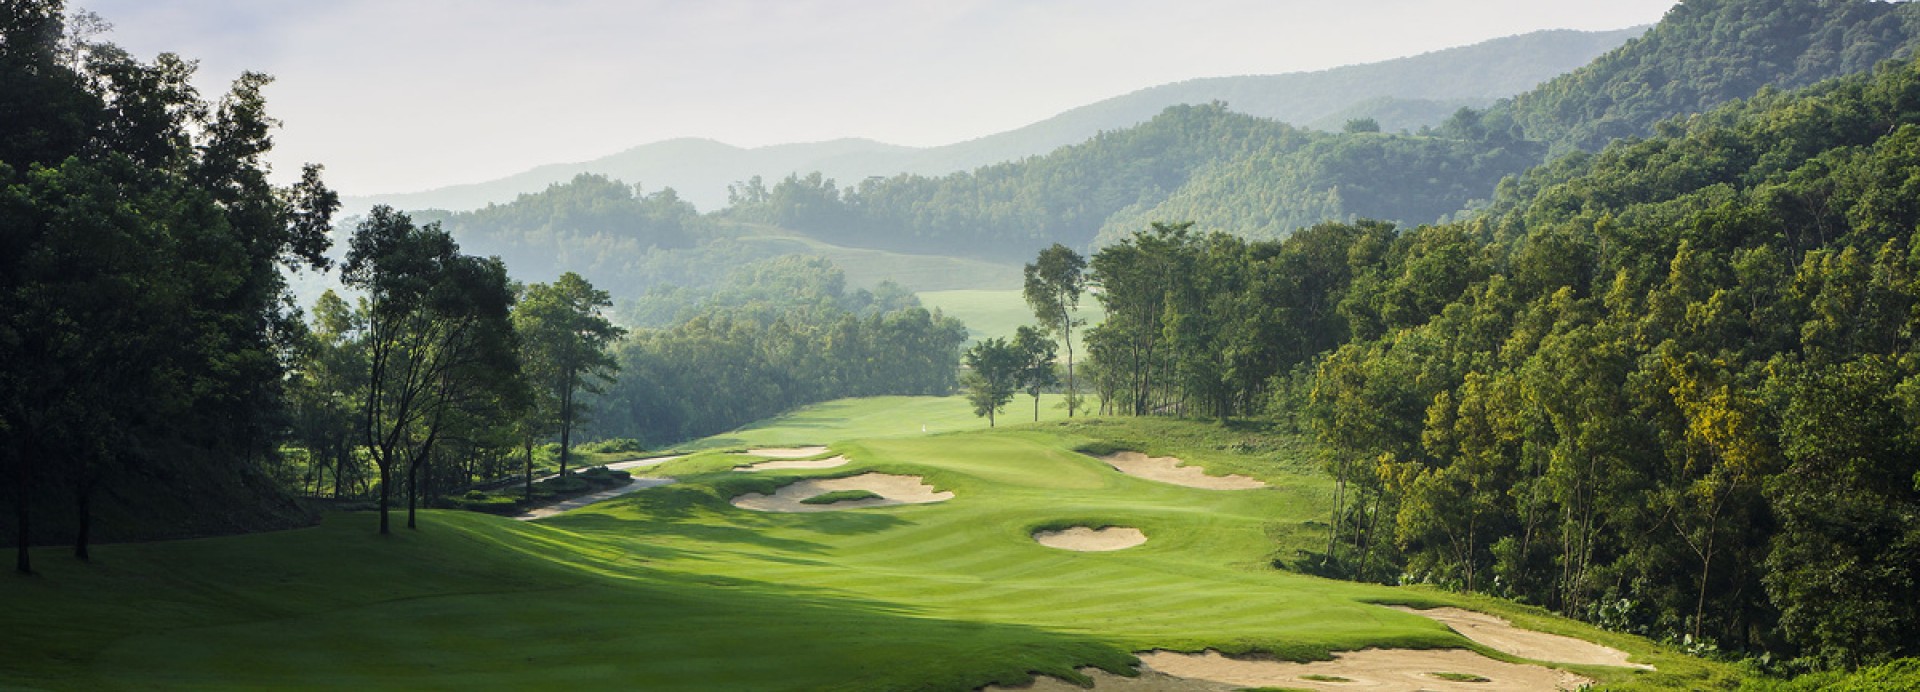 Mission Hills - Dongguan - Rose Poulter Course  | Golfové zájezdy, golfová dovolená, luxusní golf